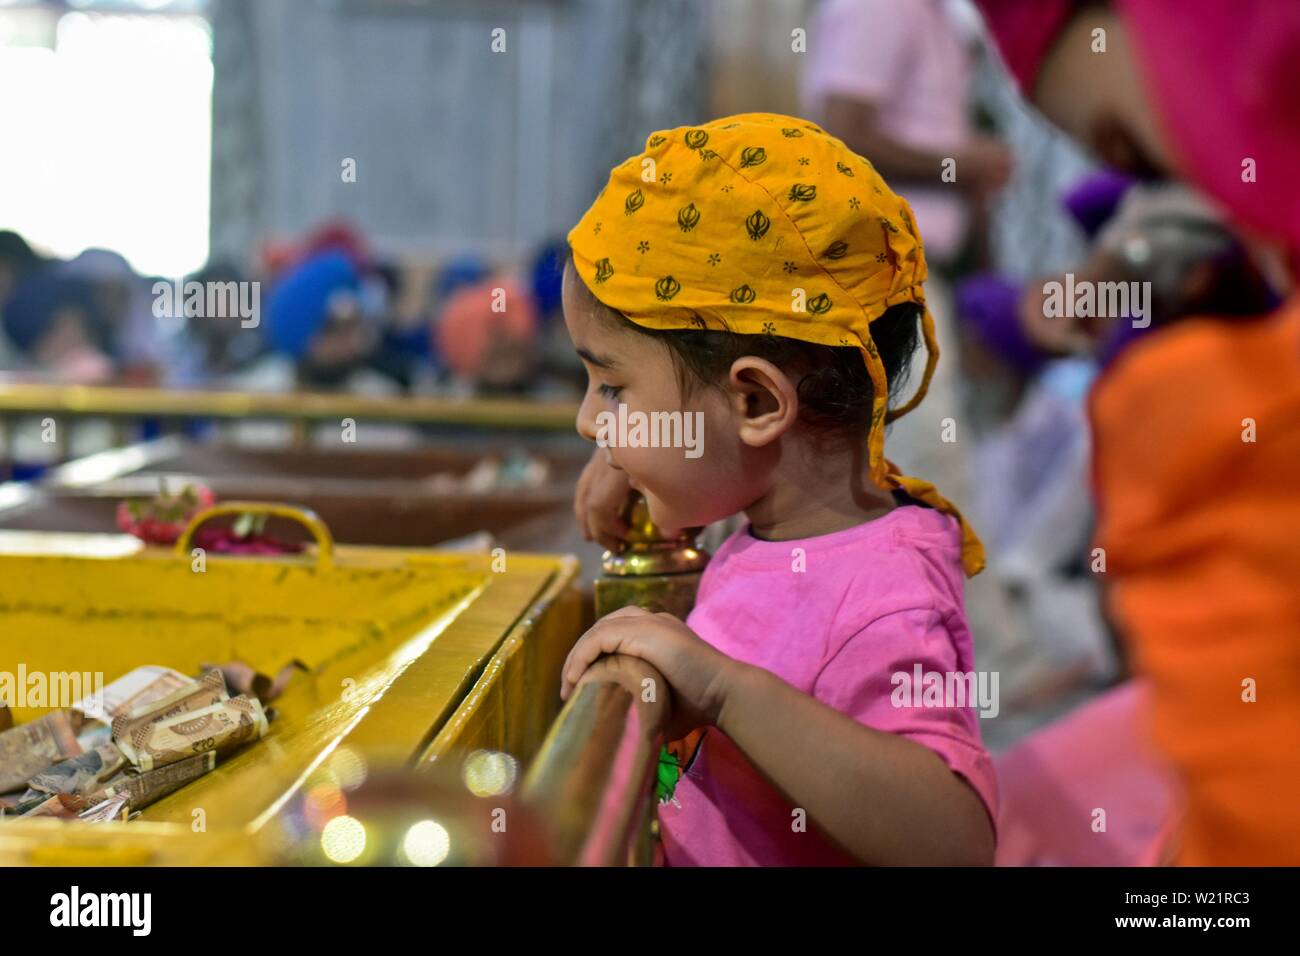 Un jeune enfant se prosterna à dévot paie un temple Sikh lors d'un anniversaire de naissance de la sixième gourou, Hargobind Singh à Srinagar.Les Sikhs dans tout le pays célèbrent l'anniversaire de la naissance de leur sixième gourou, Hargobind Singh, vendredi. La célébration a eu lieu en grande pompe et montrer à un temple Sikh principal ici à Srinagar. Banque D'Images